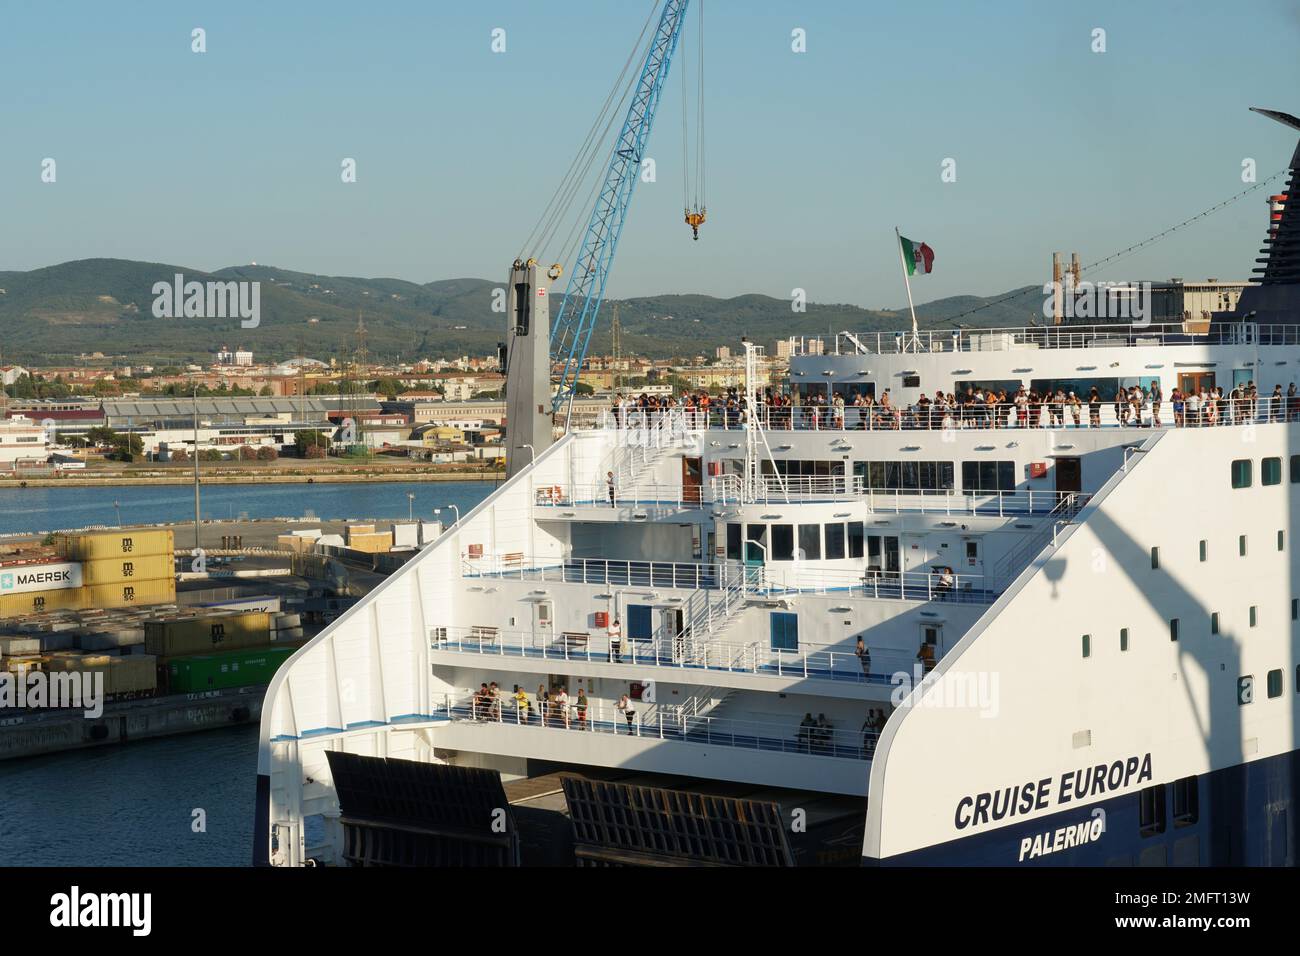 Vista sulla parte poppiera o poppiera della nave passeggeri Ro-Ro con scafo blu e piano bianco gestito dalla compagnia italiana Grimaldi Lines. Foto Stock